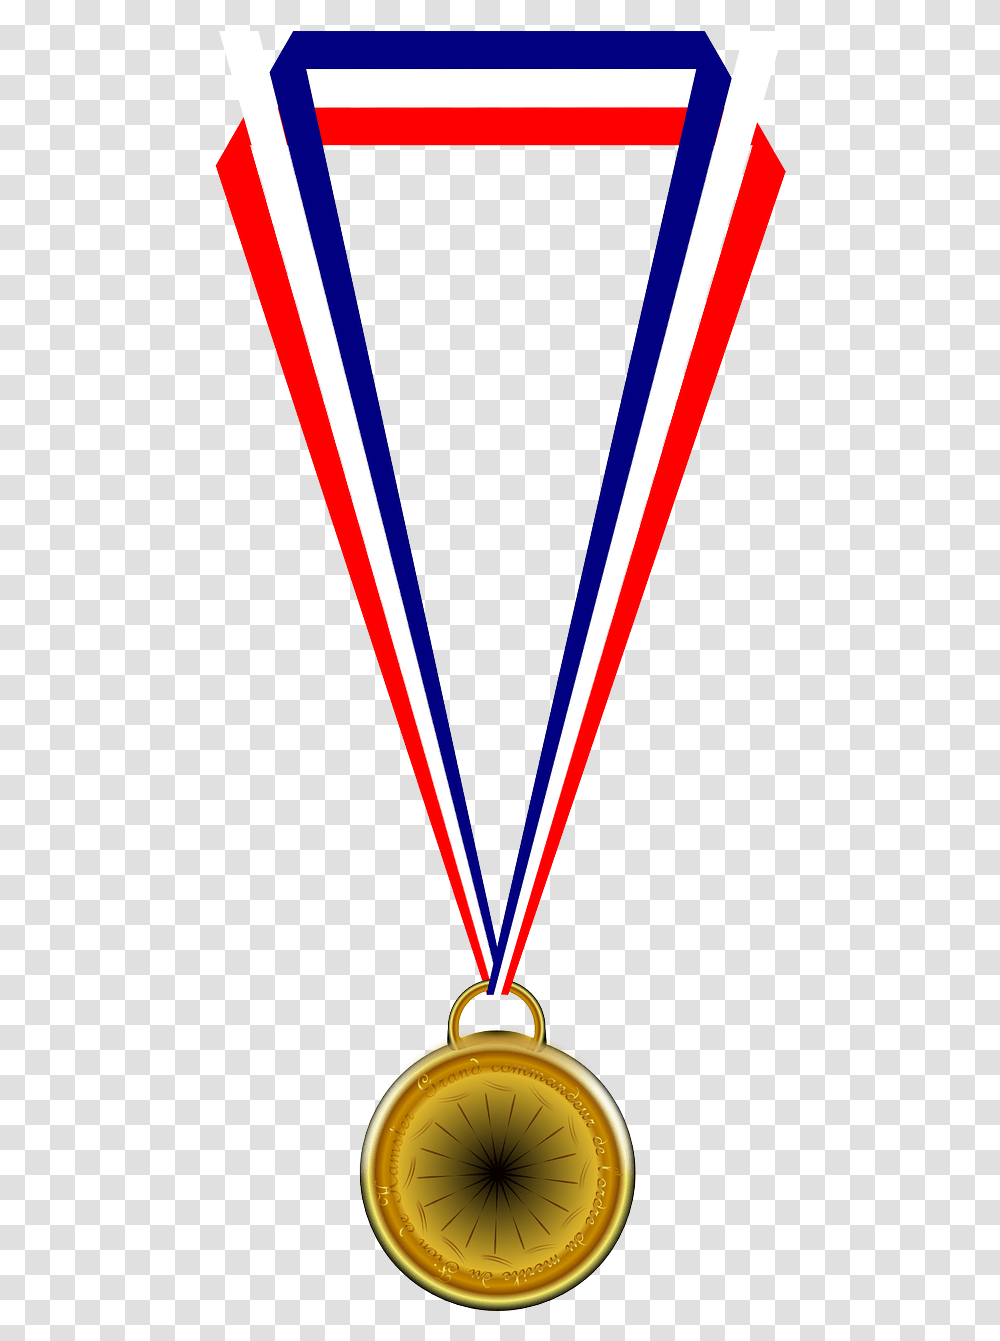 Medal Medallion Winner Ribbons And Medal, Gold, Trophy, Gold Medal, Rug Transparent Png